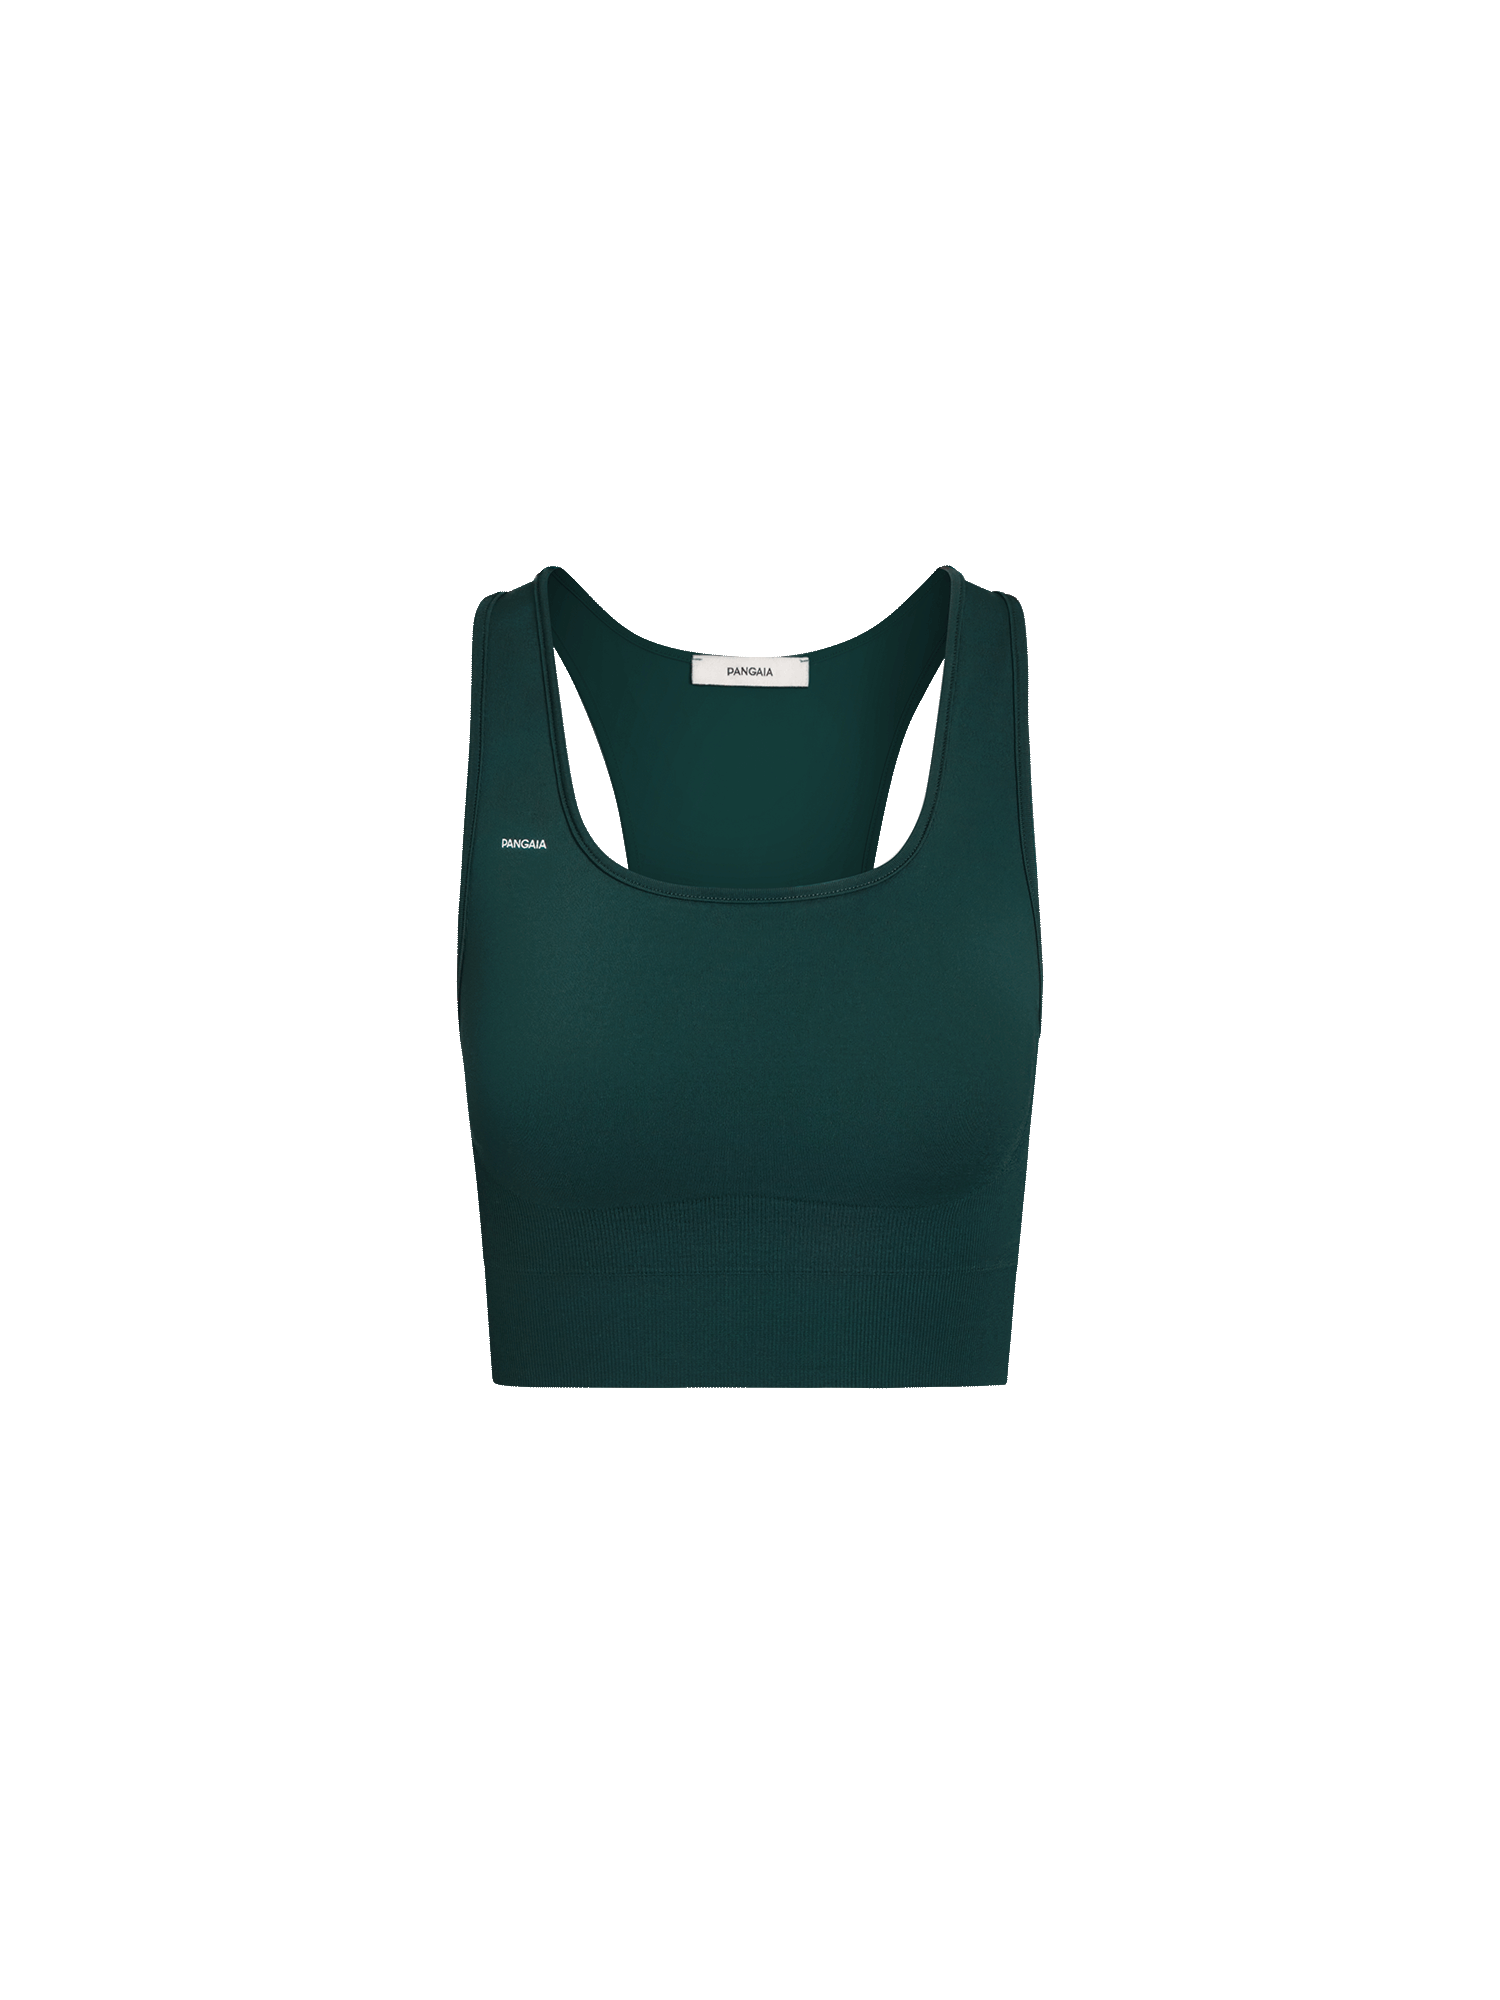 Activewear-3-0-Bra-Foliage-Green-packshot-3